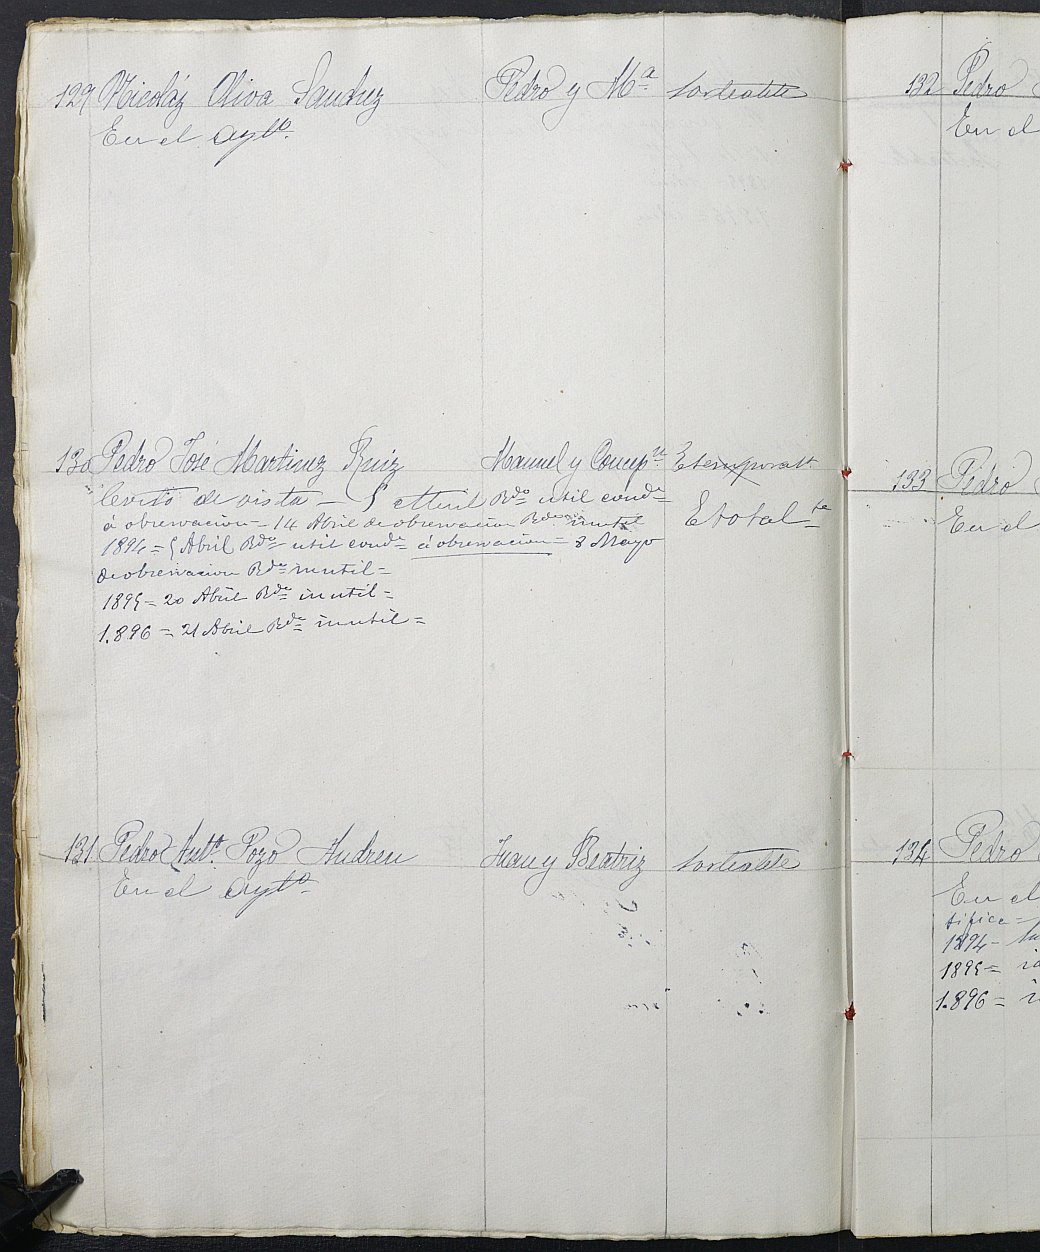 Relación de individuos declarados soldados e ingresados en Caja del Ayuntamiento de Caravaca de la Cruz de 1893.